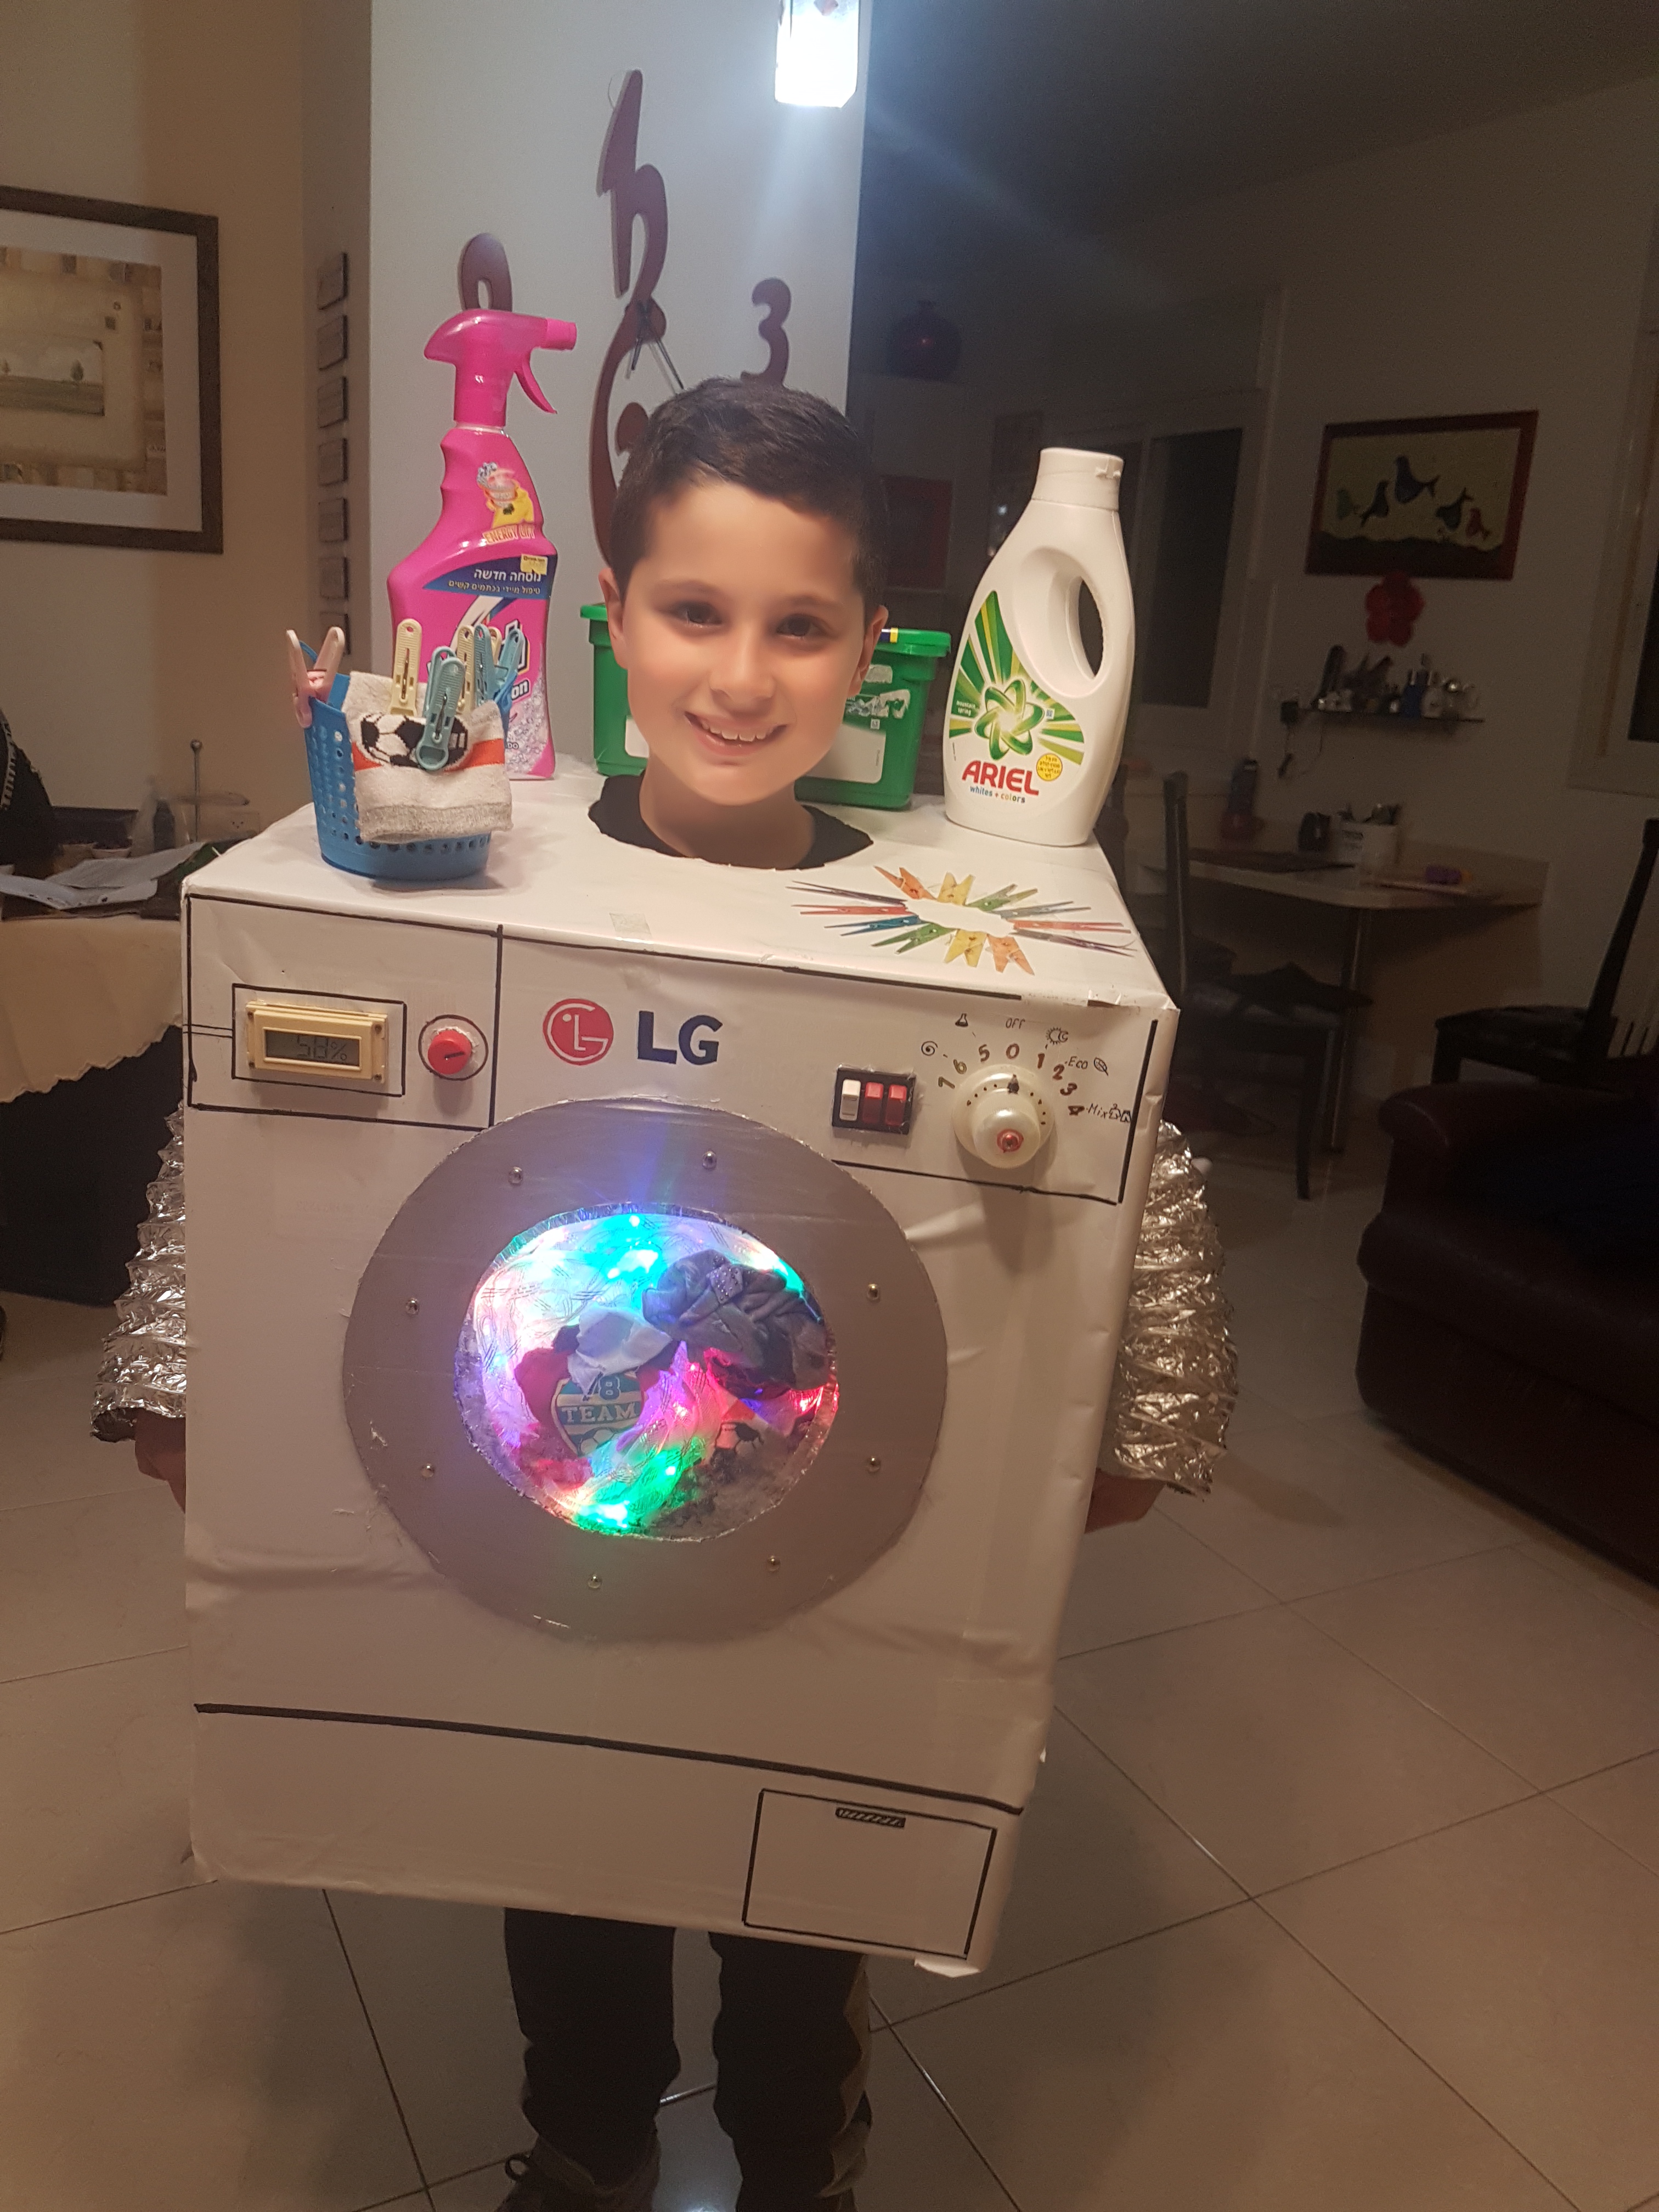 אורי תמיר בן 9.5 מחיפה, התחפש למכונת כביסה. הוא הגה את הרעיון, הכין ונערך לחומרים ממוחזרים ויצר תחפושת מדהימה ומקורית